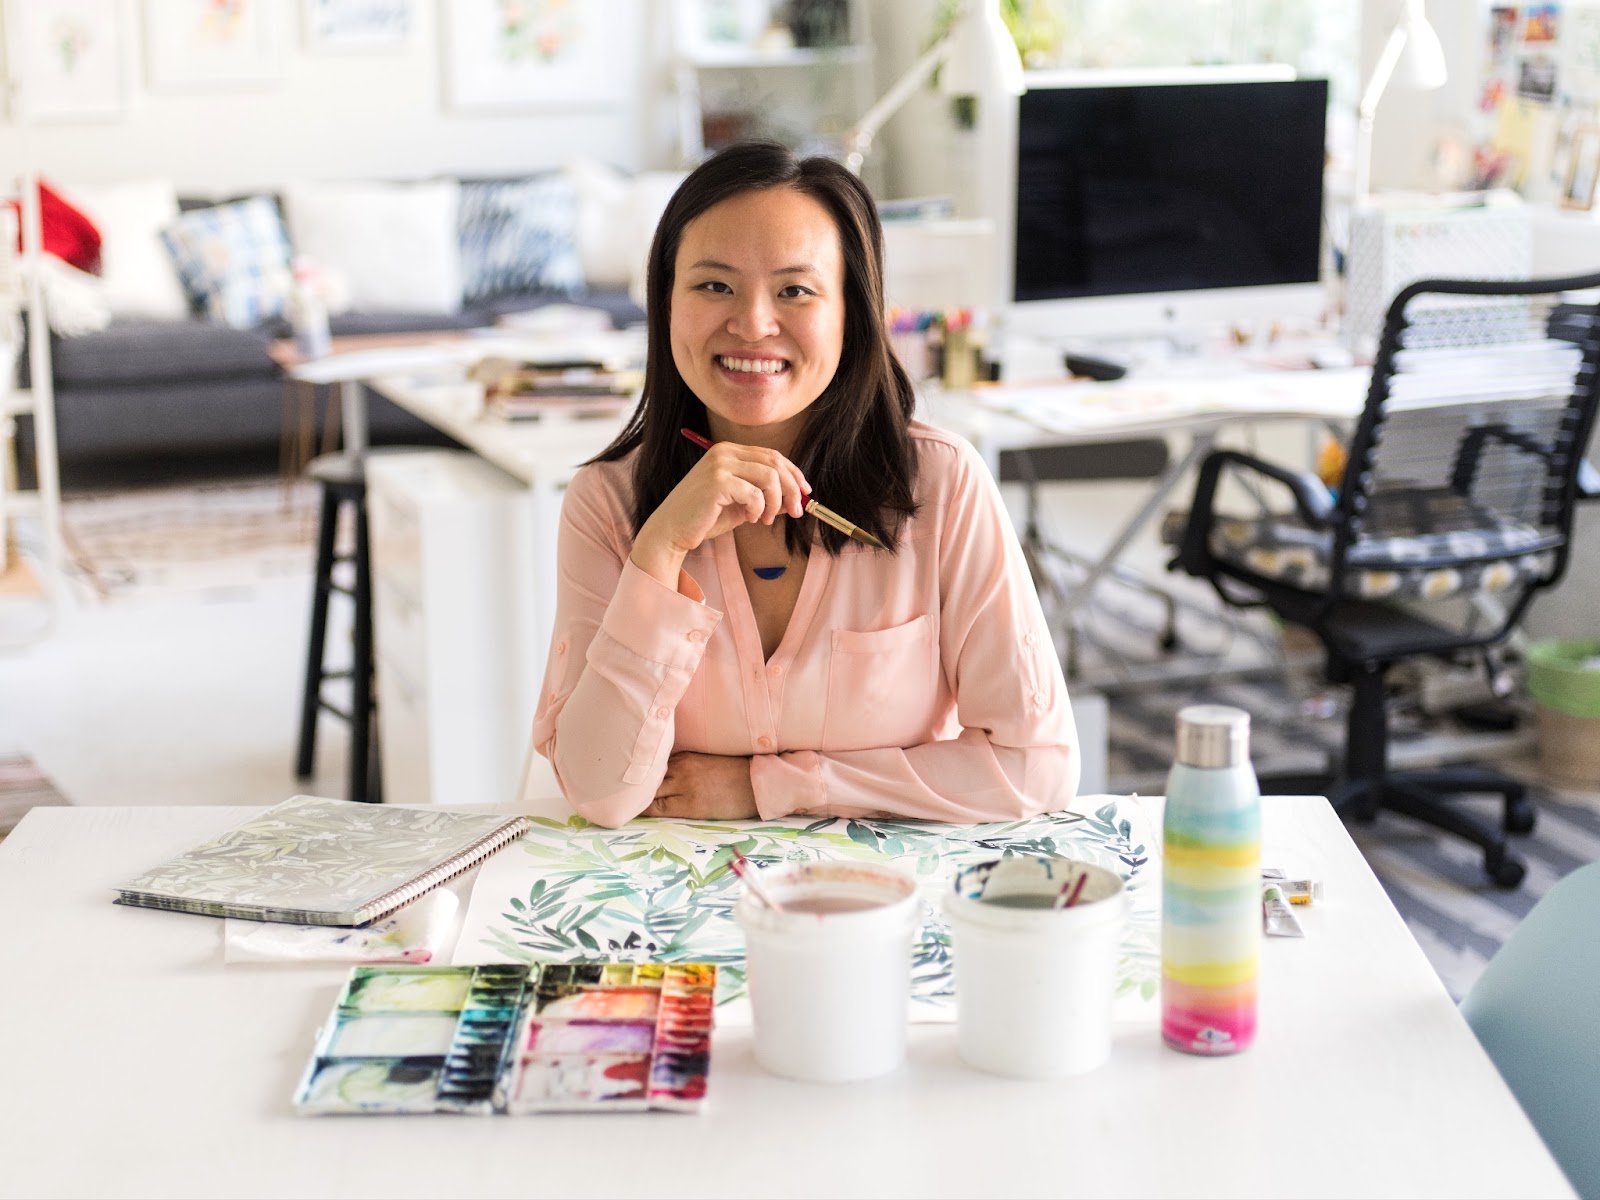 Watercolor Artist & Designer, Yao Cheng, in her studio